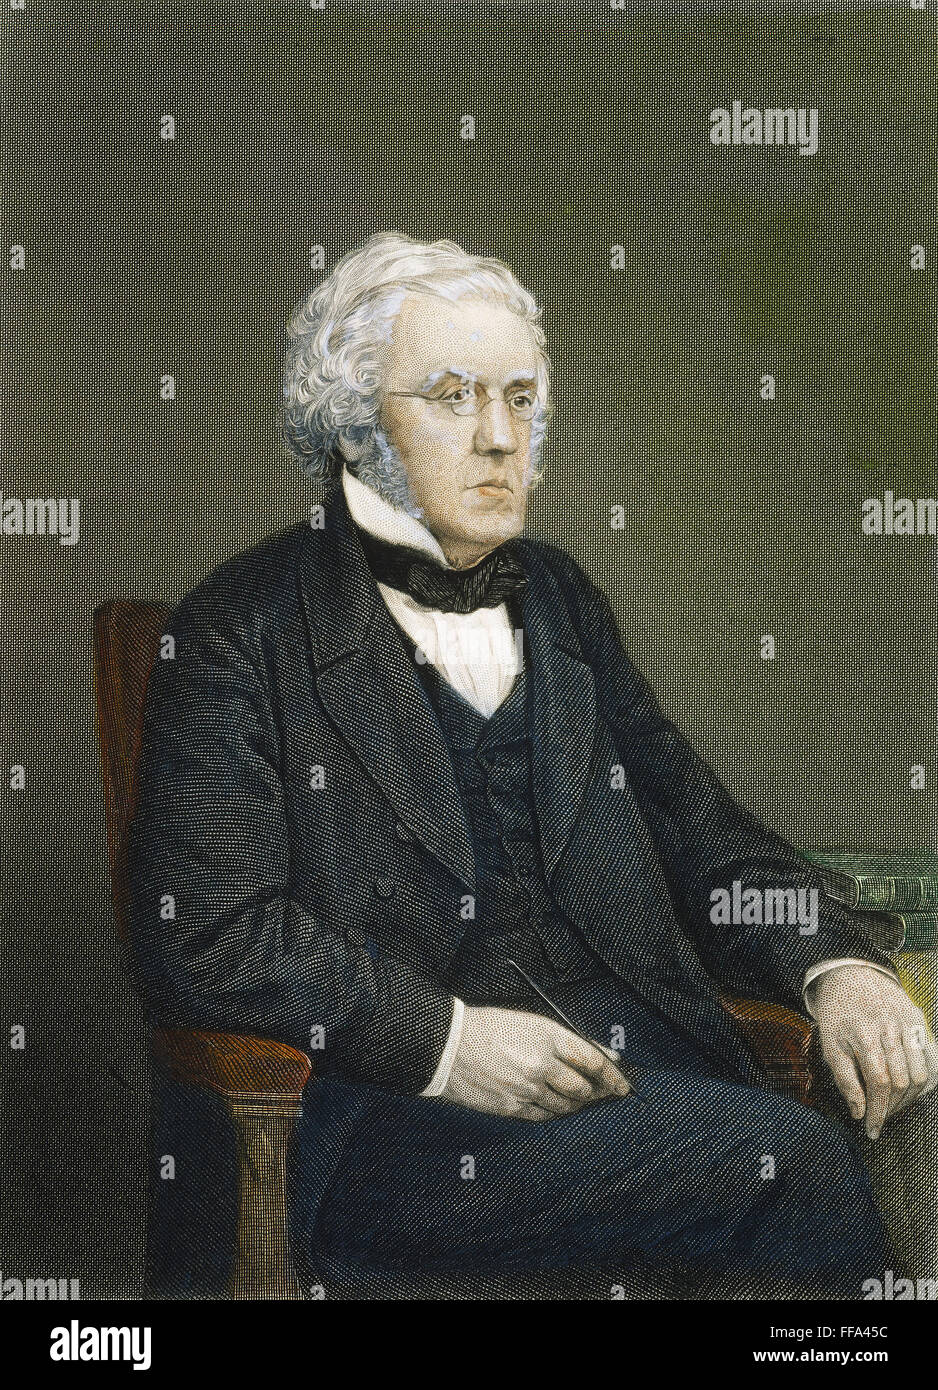 WILLIAM M. THACKERAY /n(1811-1863). Englischer Schriftsteller und Journalist. Stahl, Gravur, American, 1872. Stockfoto